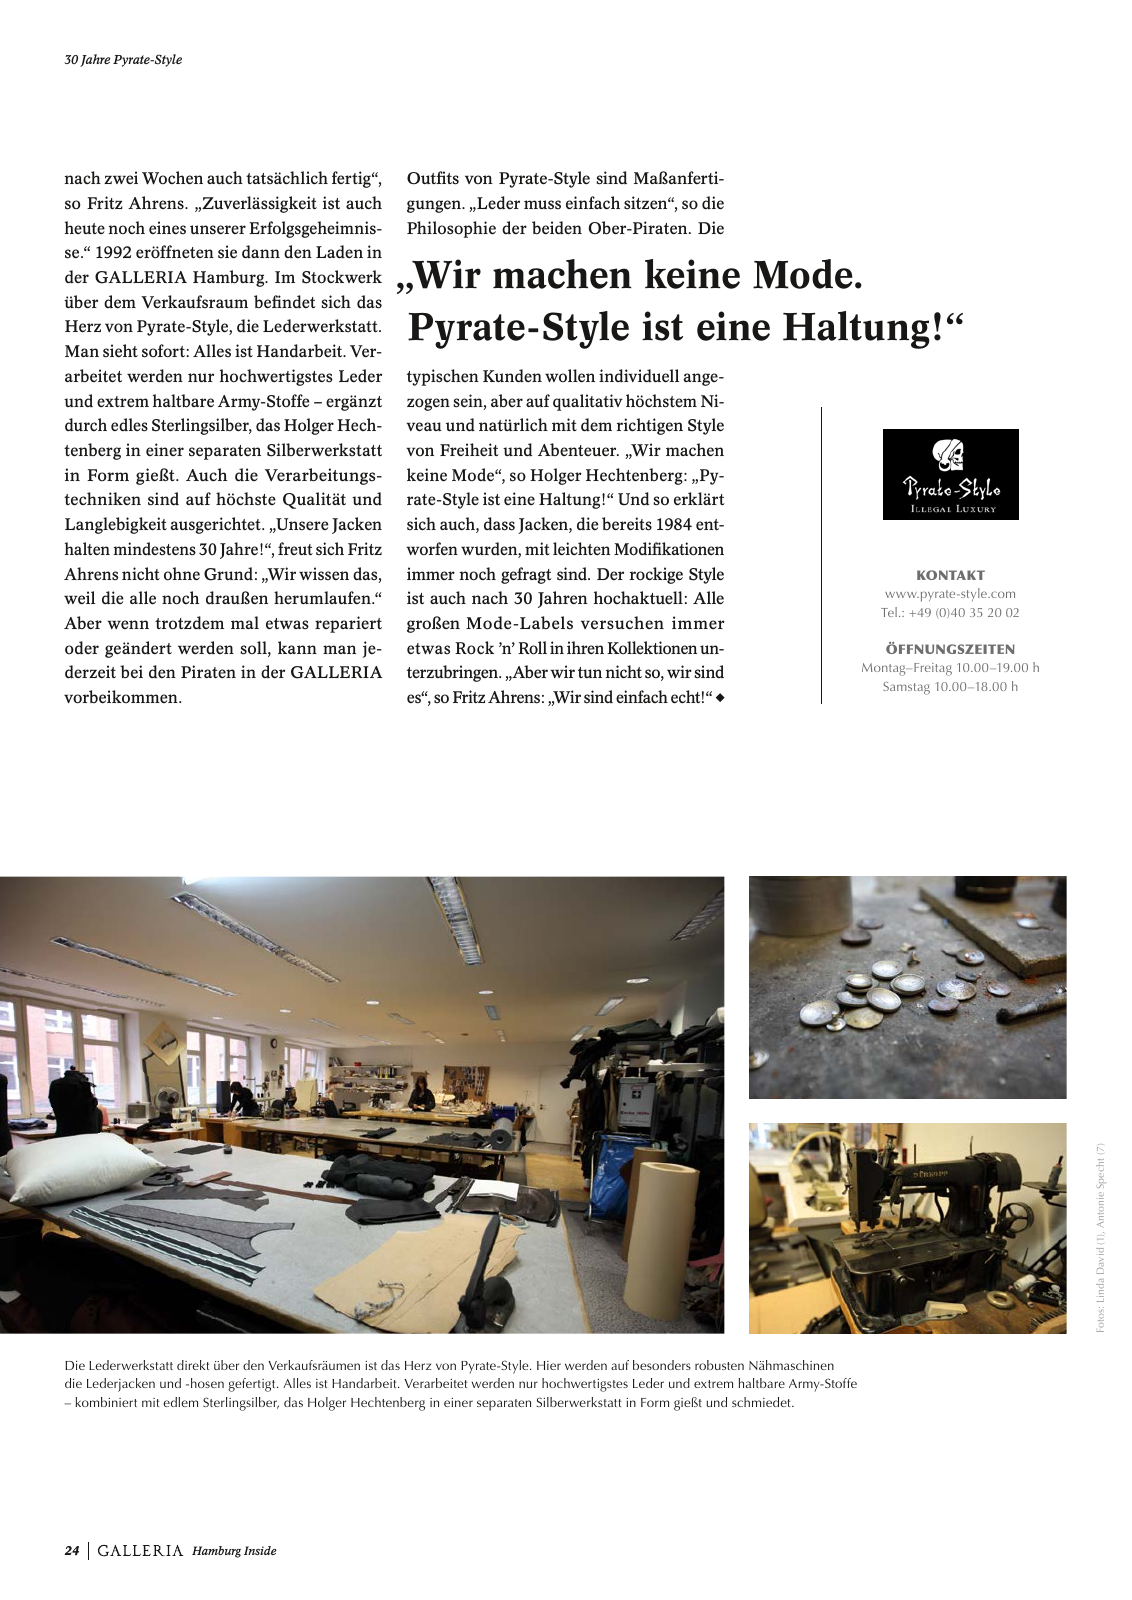 Vorschau GALLERIA Magazin Hamburg Inside 1 Seite 24